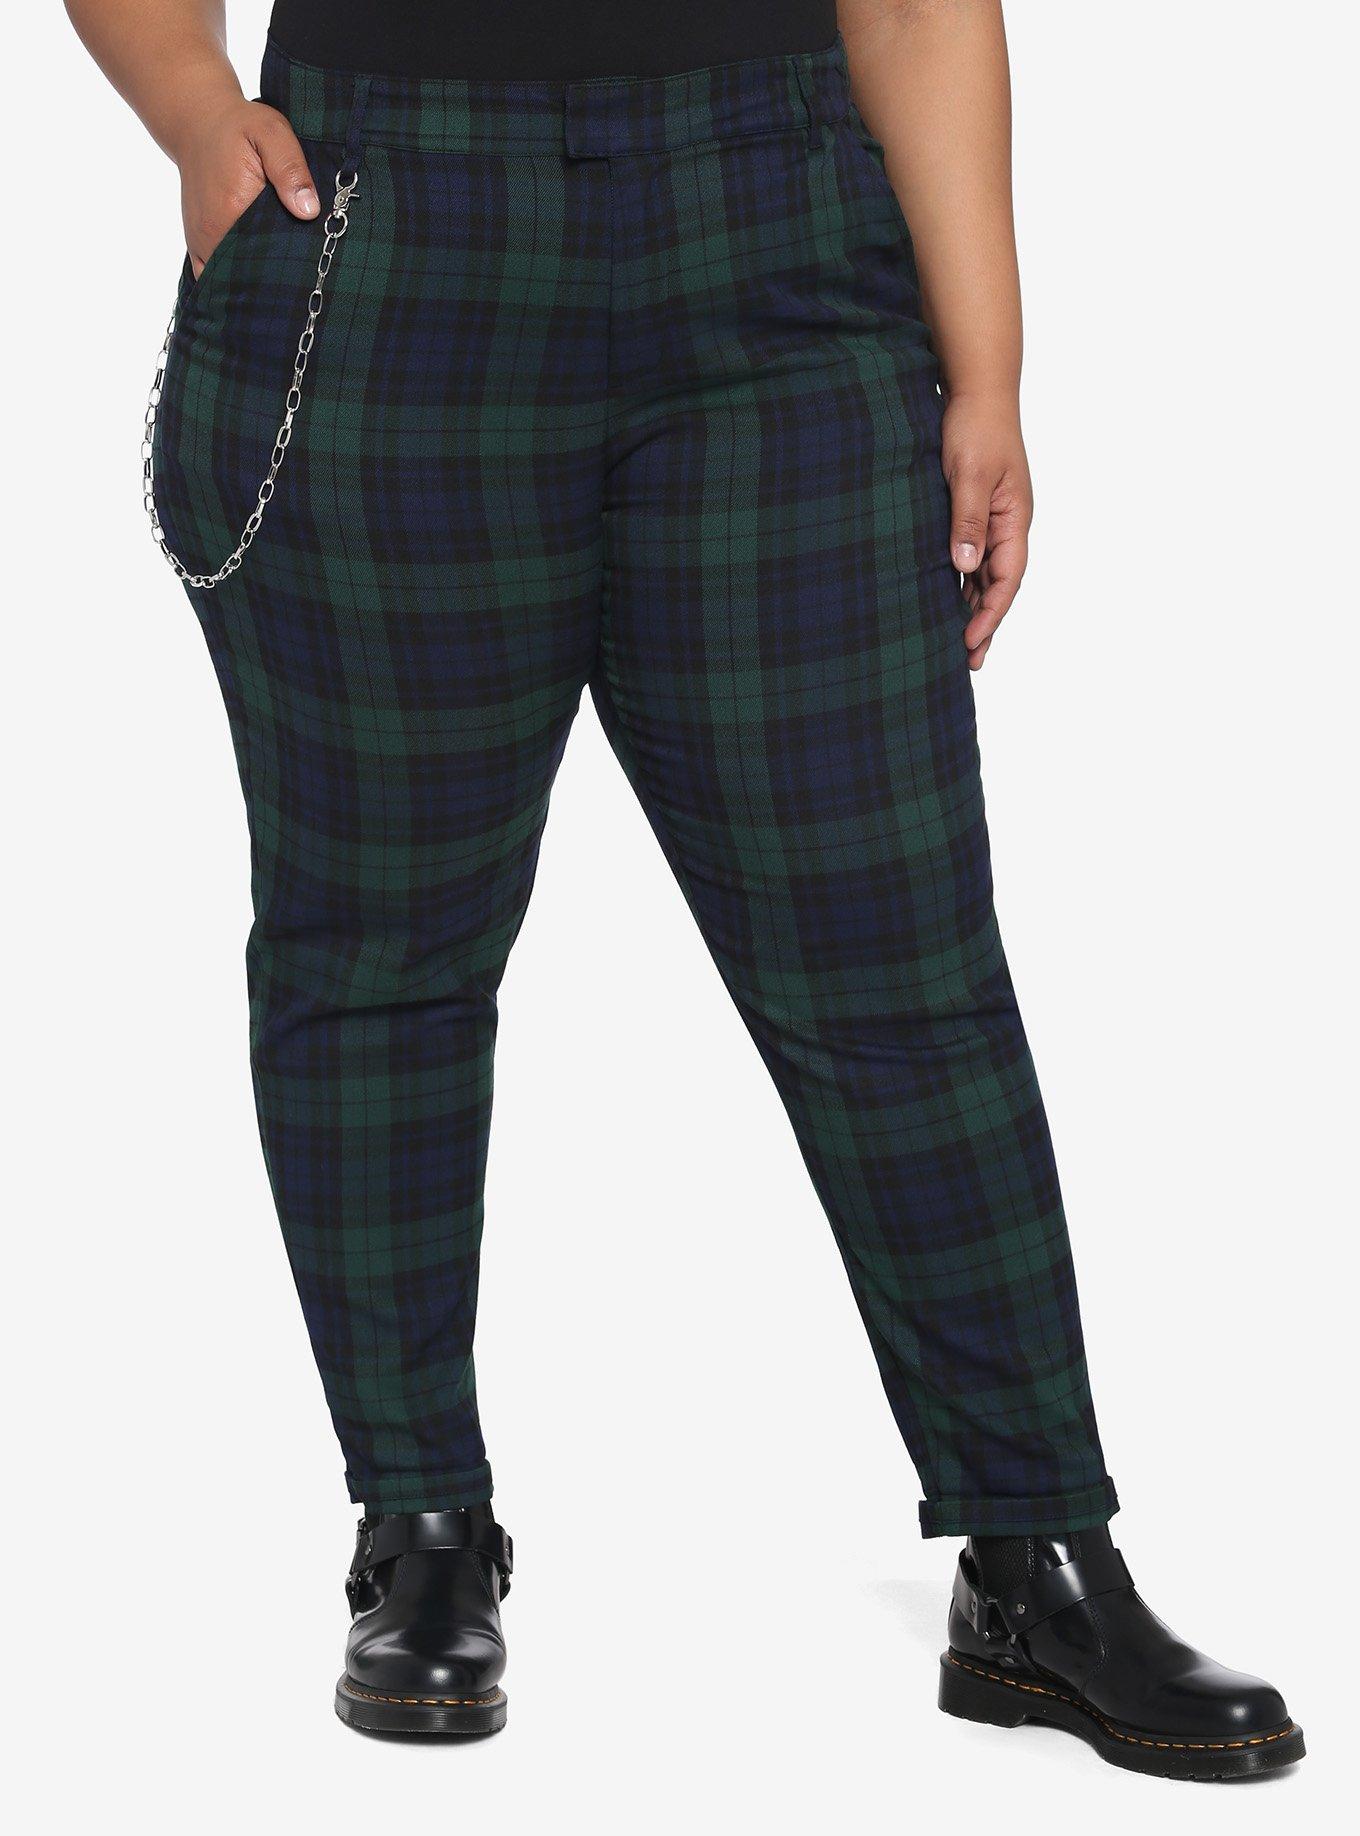 Blue & Green Plaid Pants With Detachable Chain Plus Size